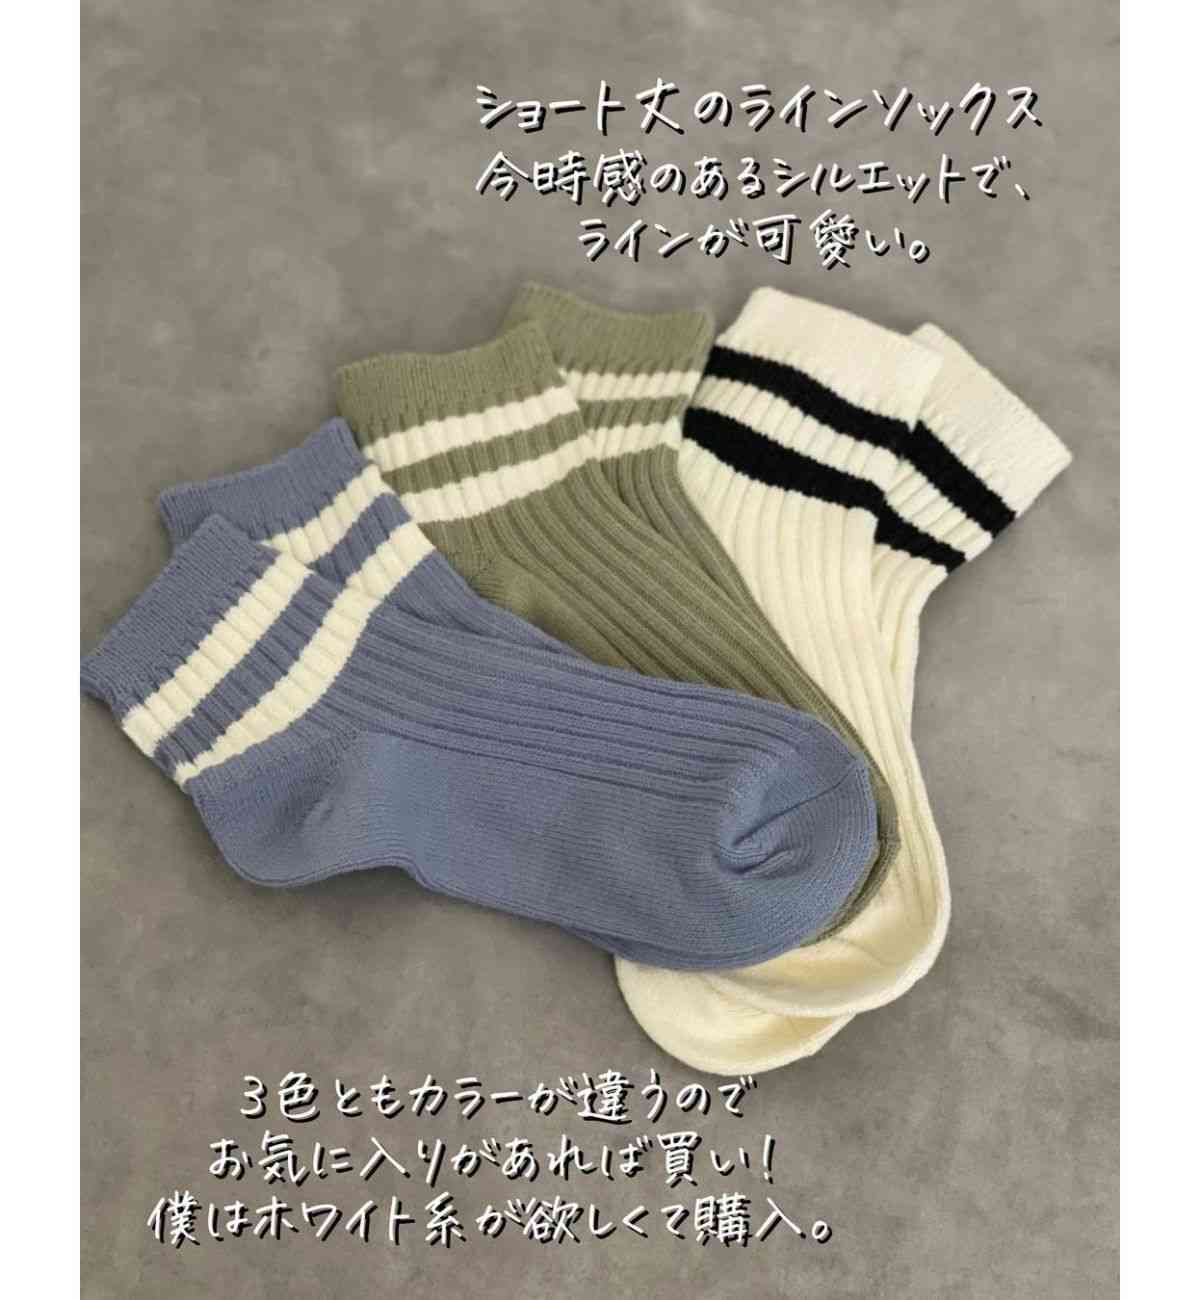 ワークマンの靴下「Casual Cotton」は3足セットで499円